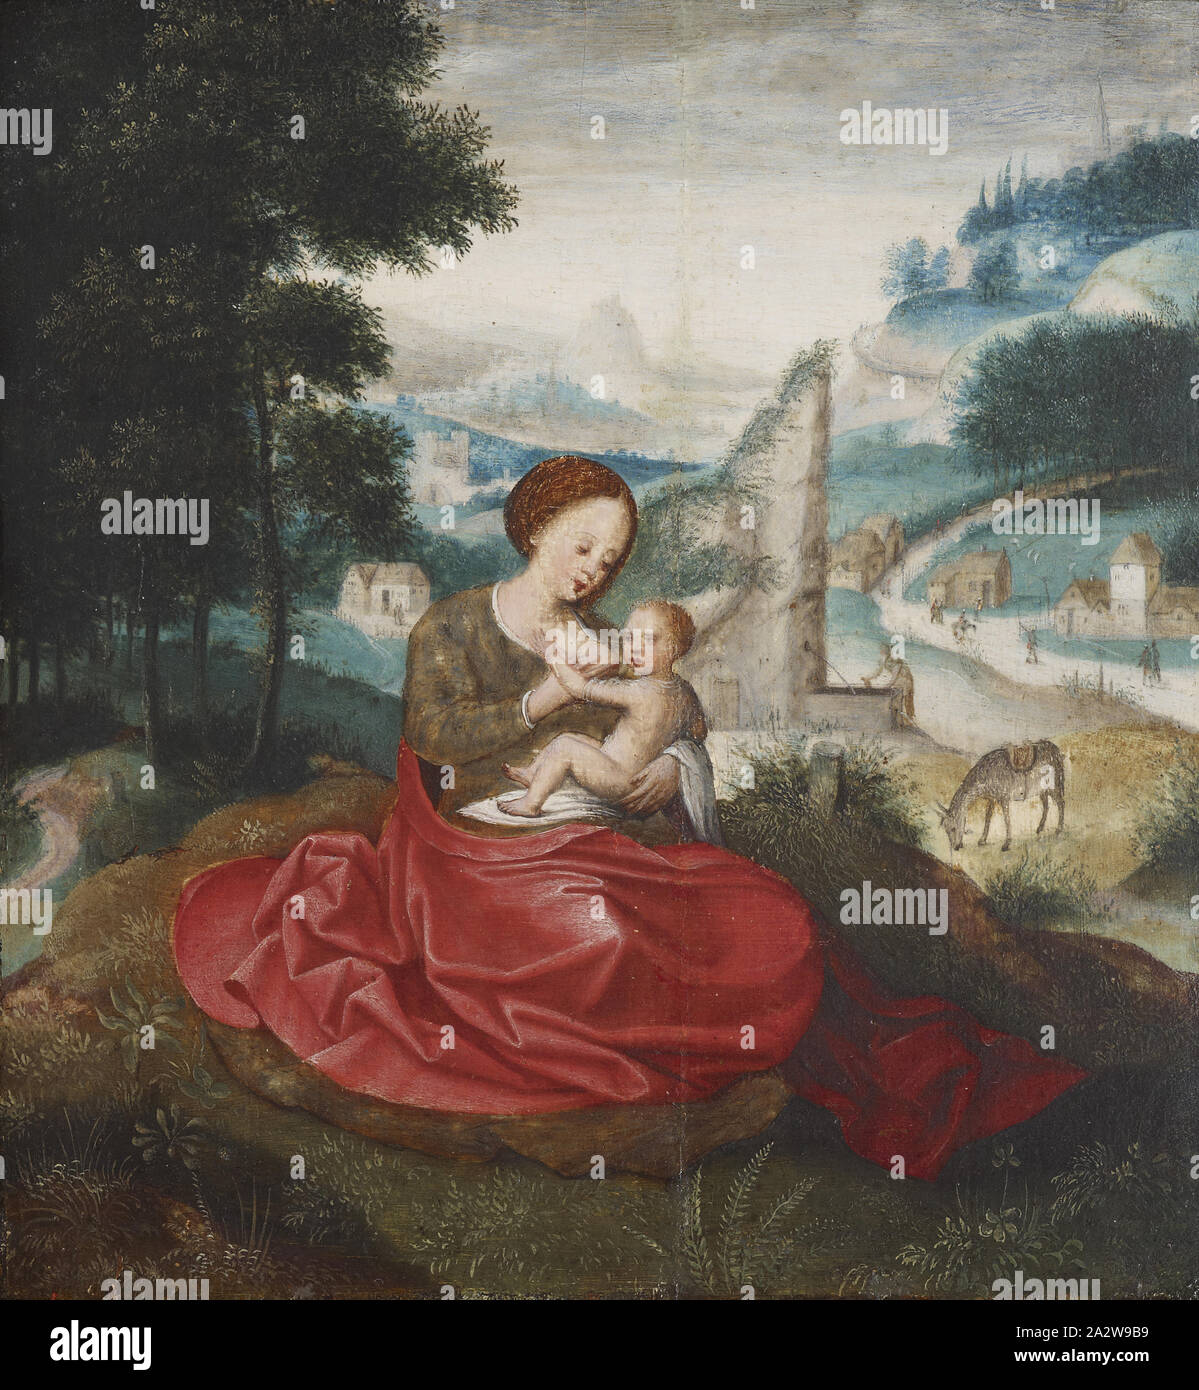 Resto sulla fuga in Egitto, seguace di Adriaen Isenbrandt (fiammingo, 1490-1551), XVI secolo, olio su pannello, 8 x 7 in. (Pannello), unione di pittura e scultura prima del 1800 Foto Stock